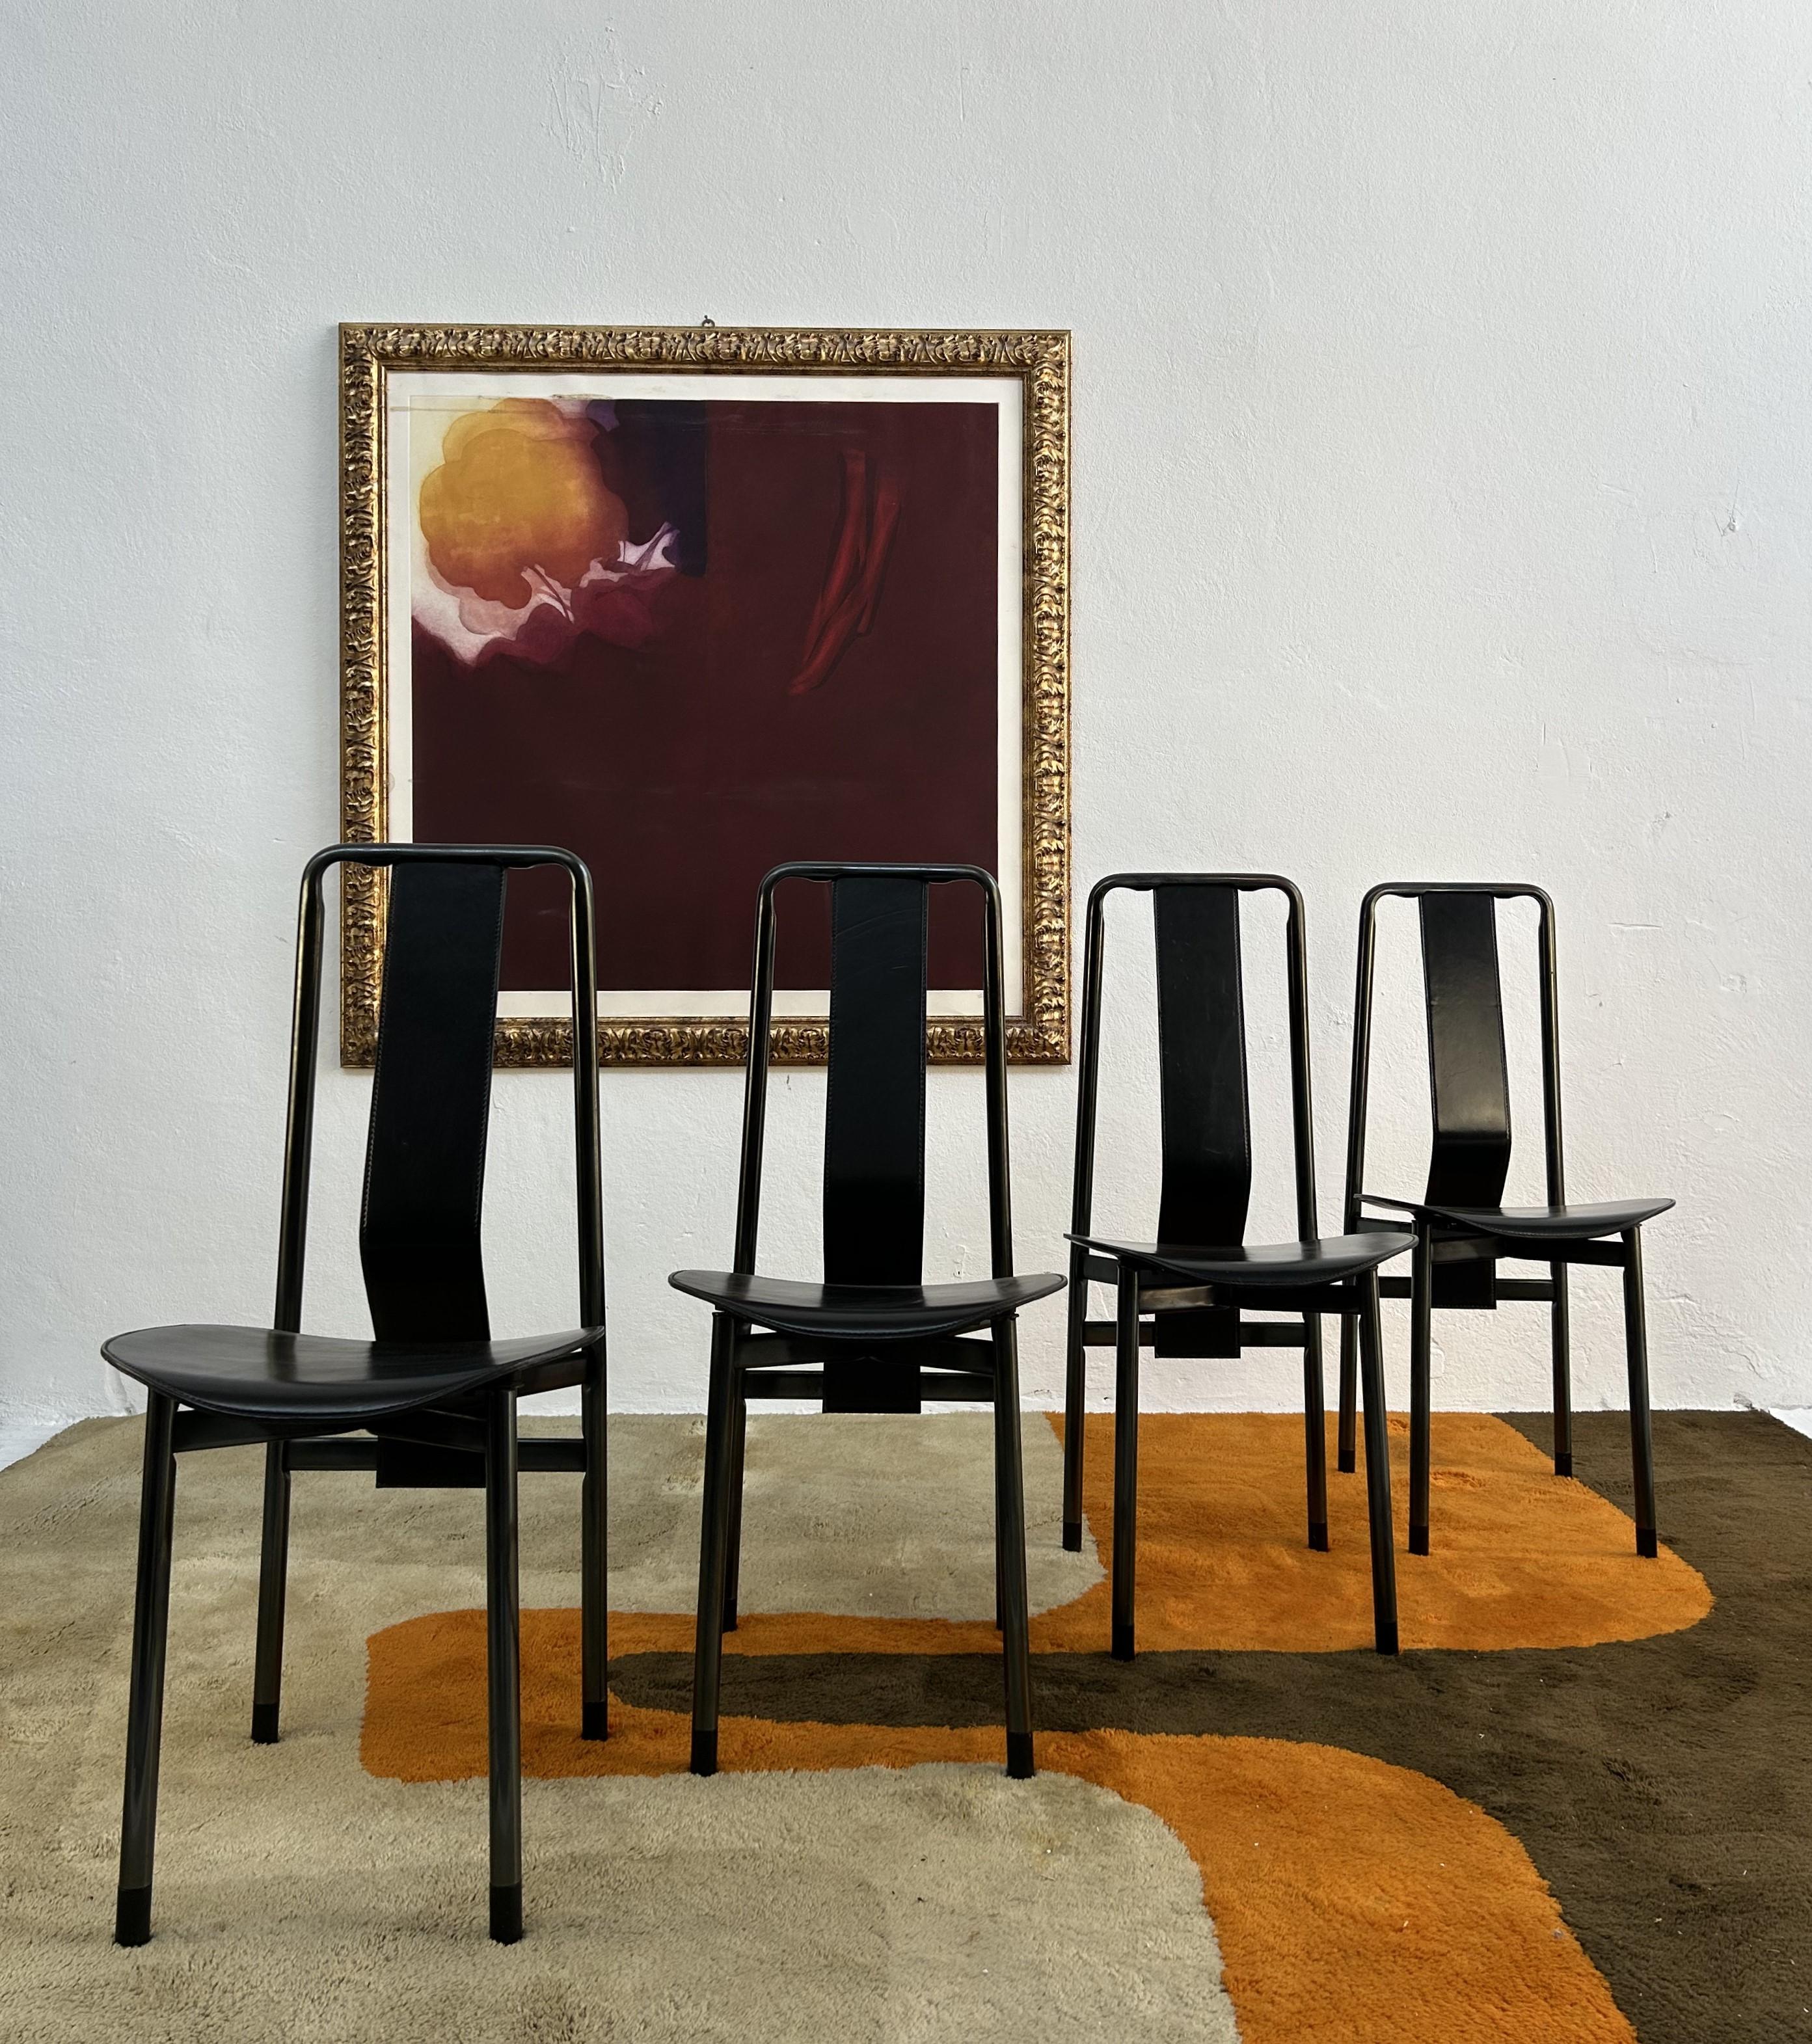 La chaise Irma, créée en 1979 par le célèbre designer italien Achille Castiglioni pour Zanotta, témoigne de l'esprit d'innovation du design italien. Cette chaise se caractérise par son orientation industrielle et ergonomique, avec un cadre en acier